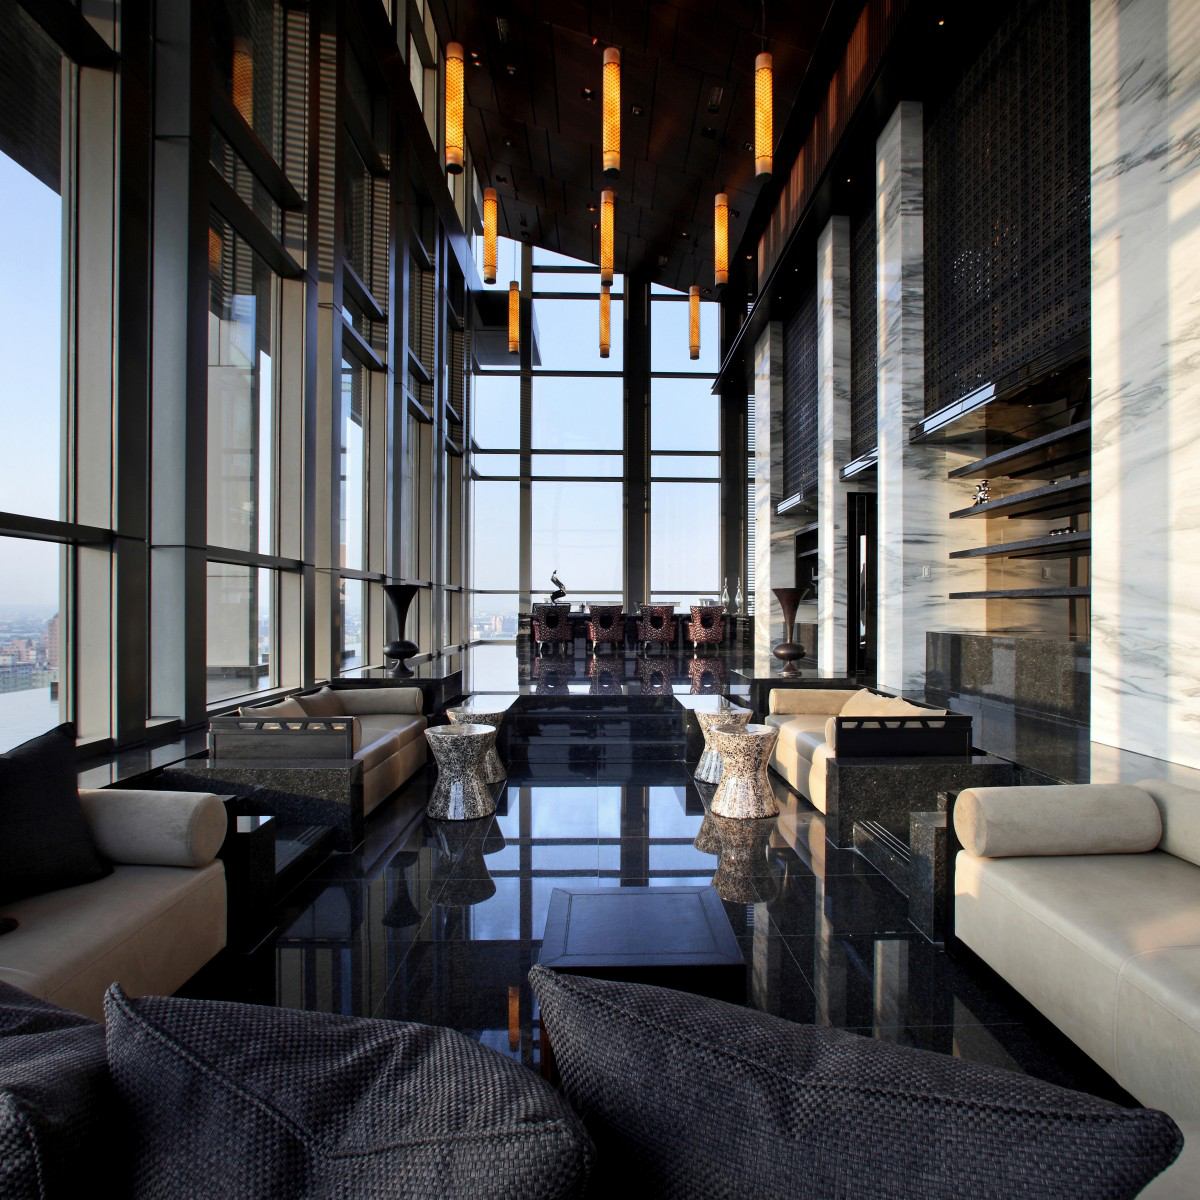 POMO Lounge Sky Bar by Wang Sheng Cheng